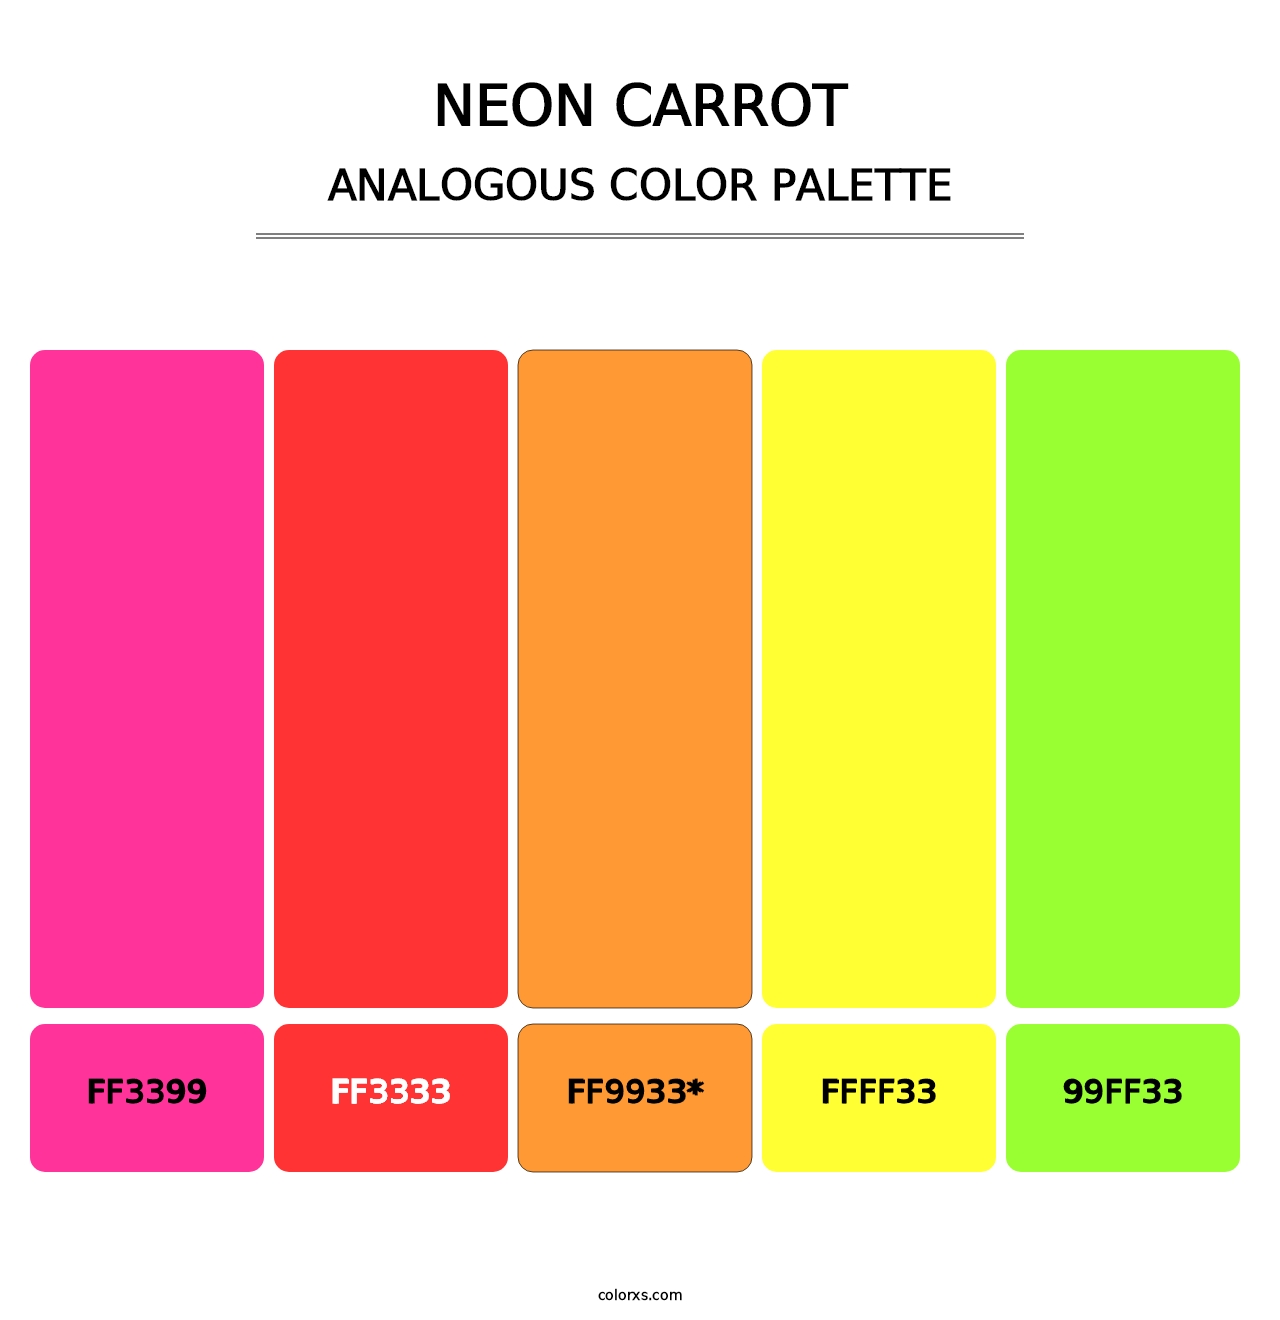 Neon Carrot - Analogous Color Palette